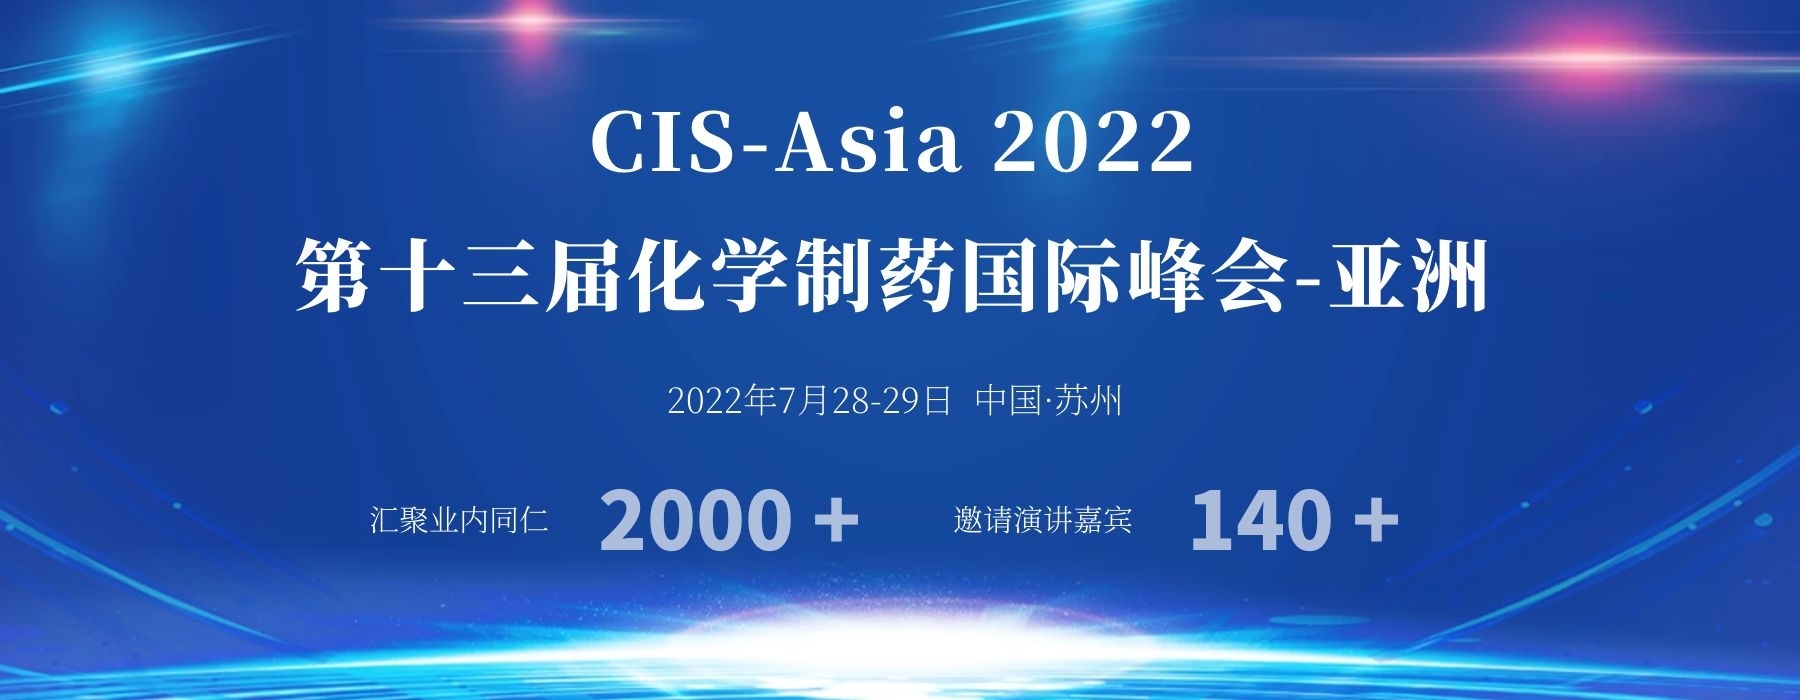 第十三届化学制药国际峰会--亚洲 CIS-Asia 2022